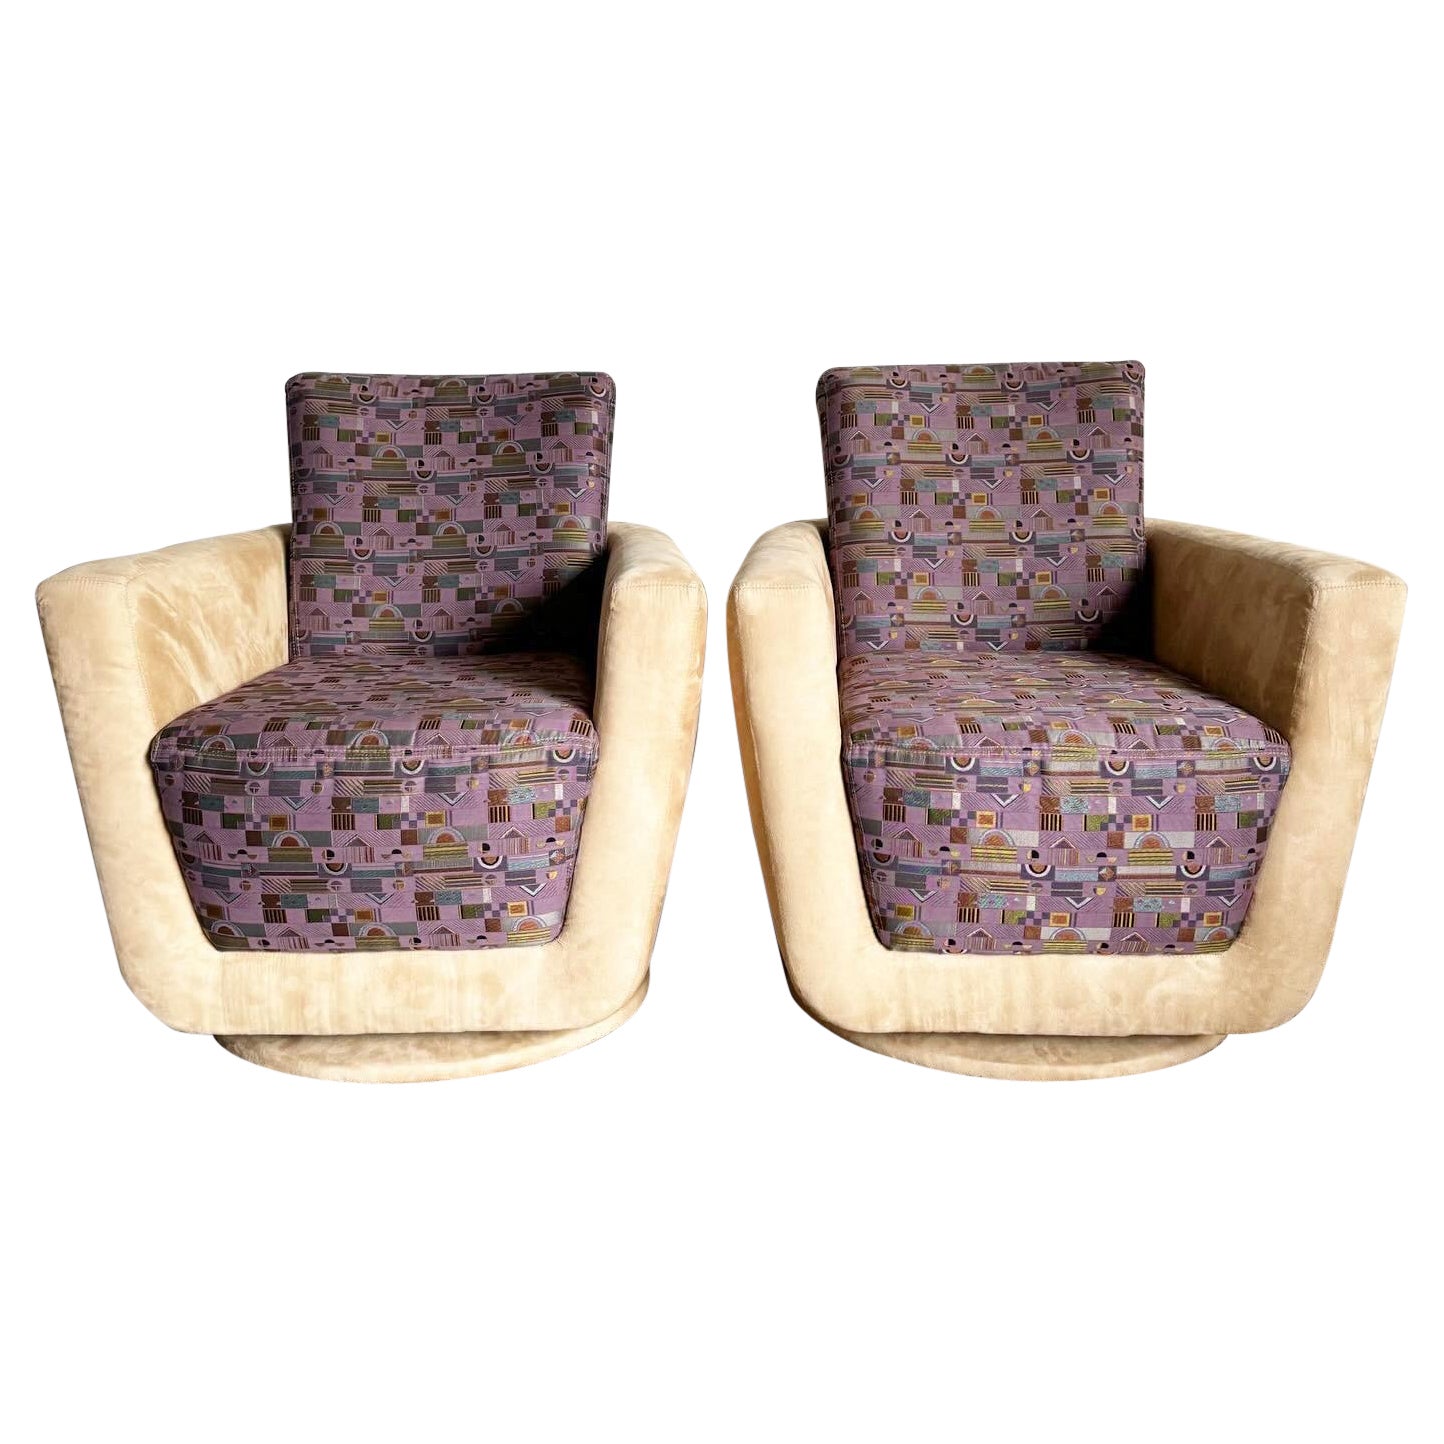 Chaises longues pivotantes postmodernes en microfibre bronzée et à motifs violets - une paire